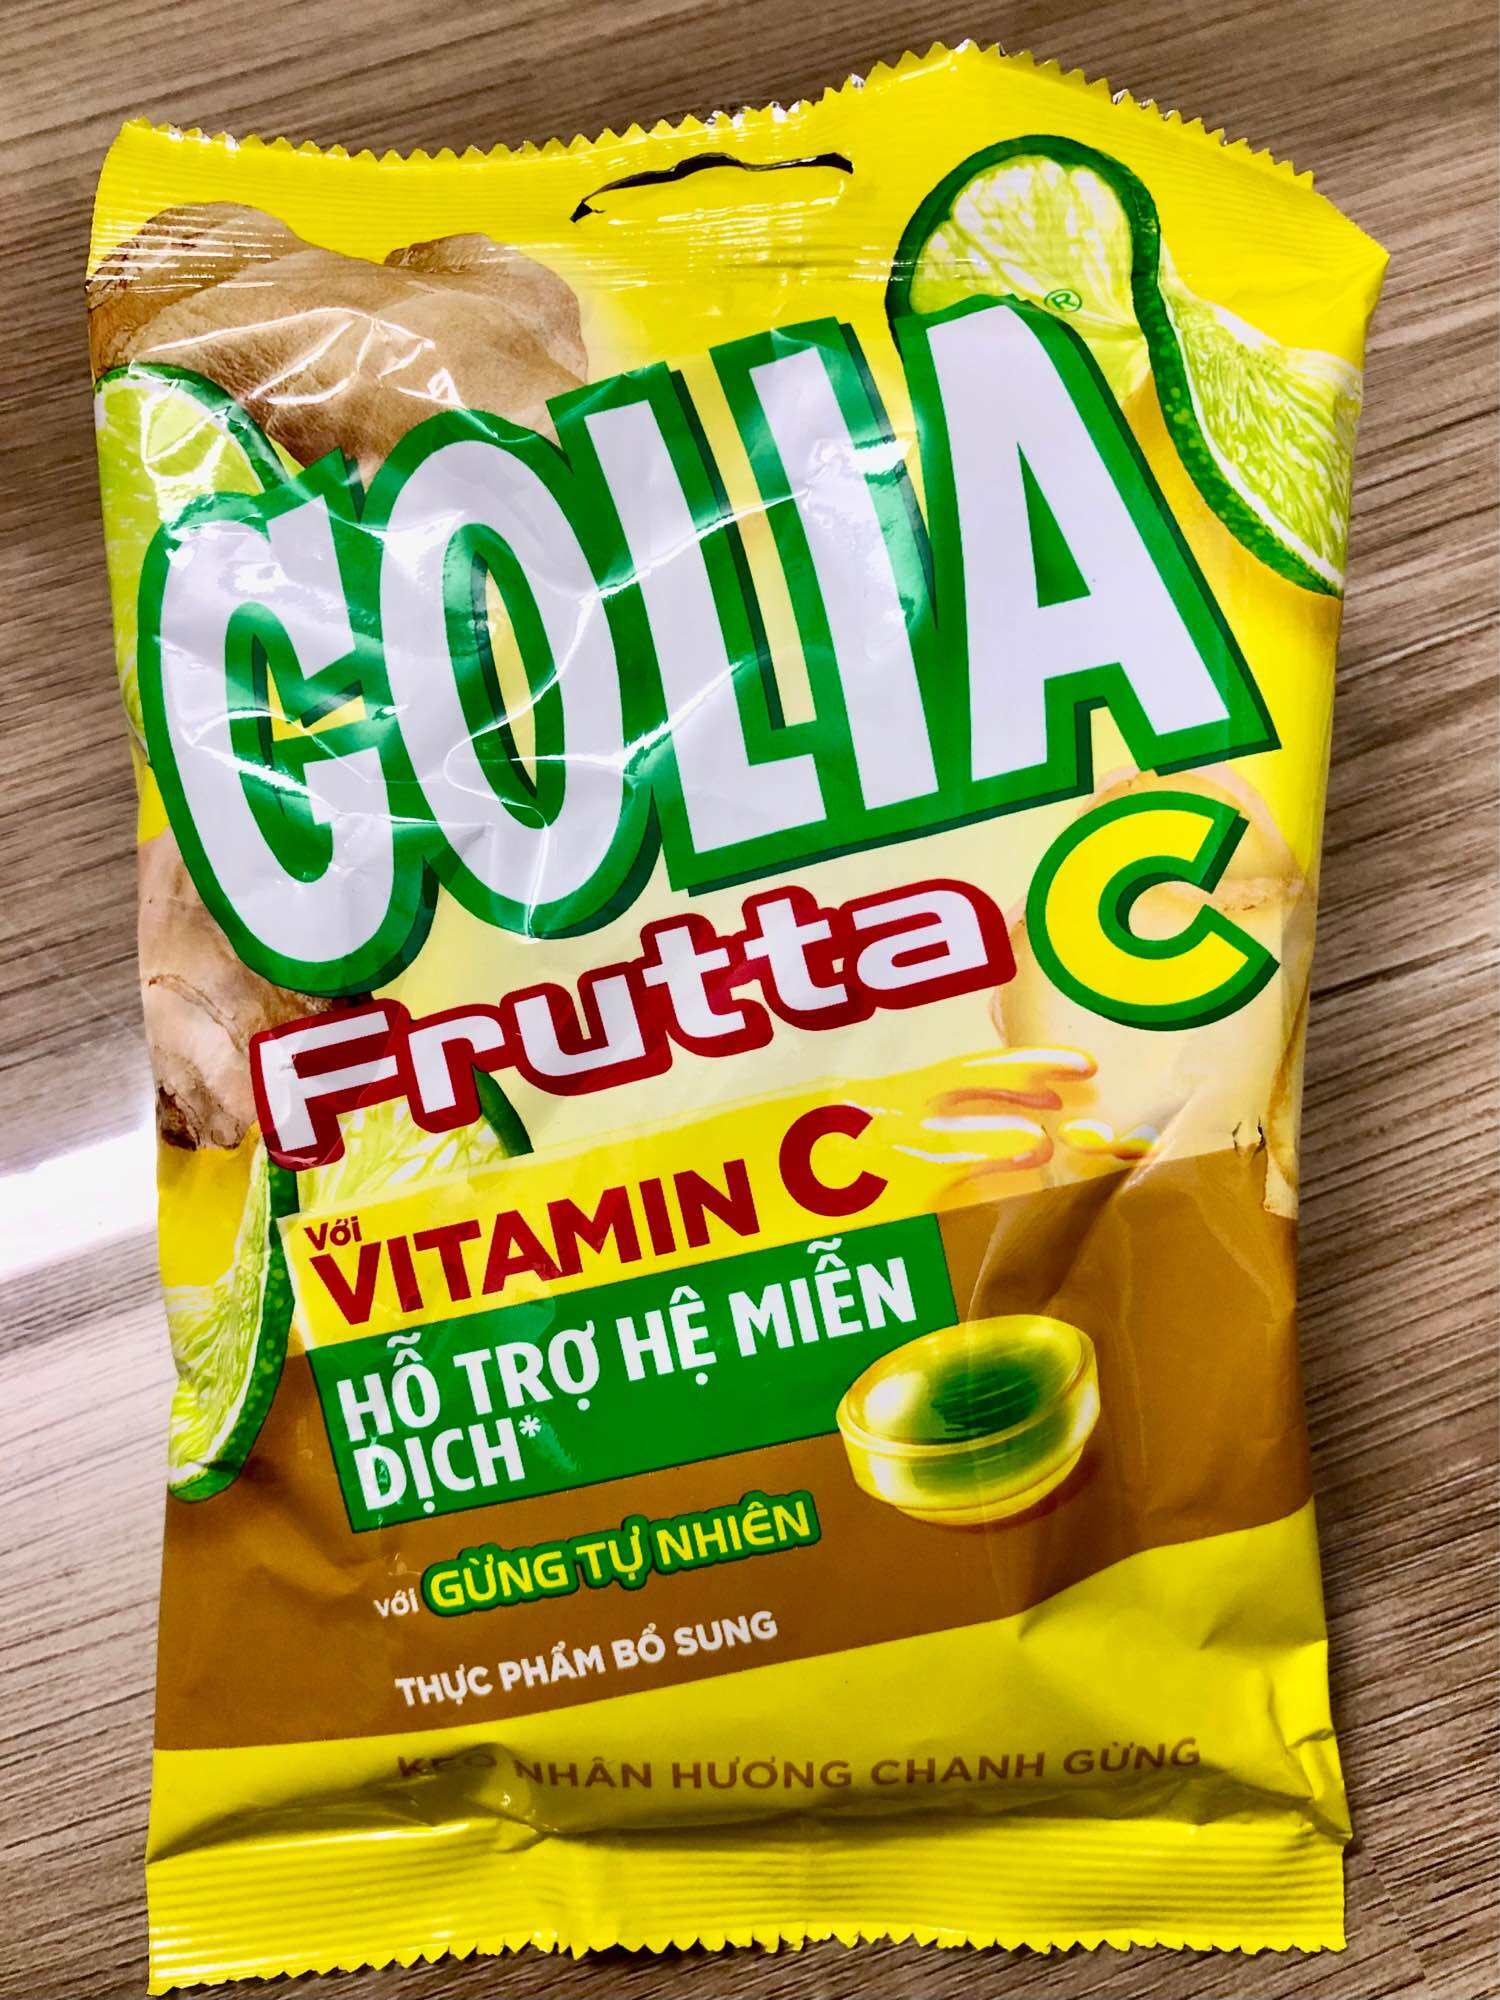 Kẹo Golia Frutta C nhân chanh gừng vitamin C hỗ trợ miễn dịch với gừng tự